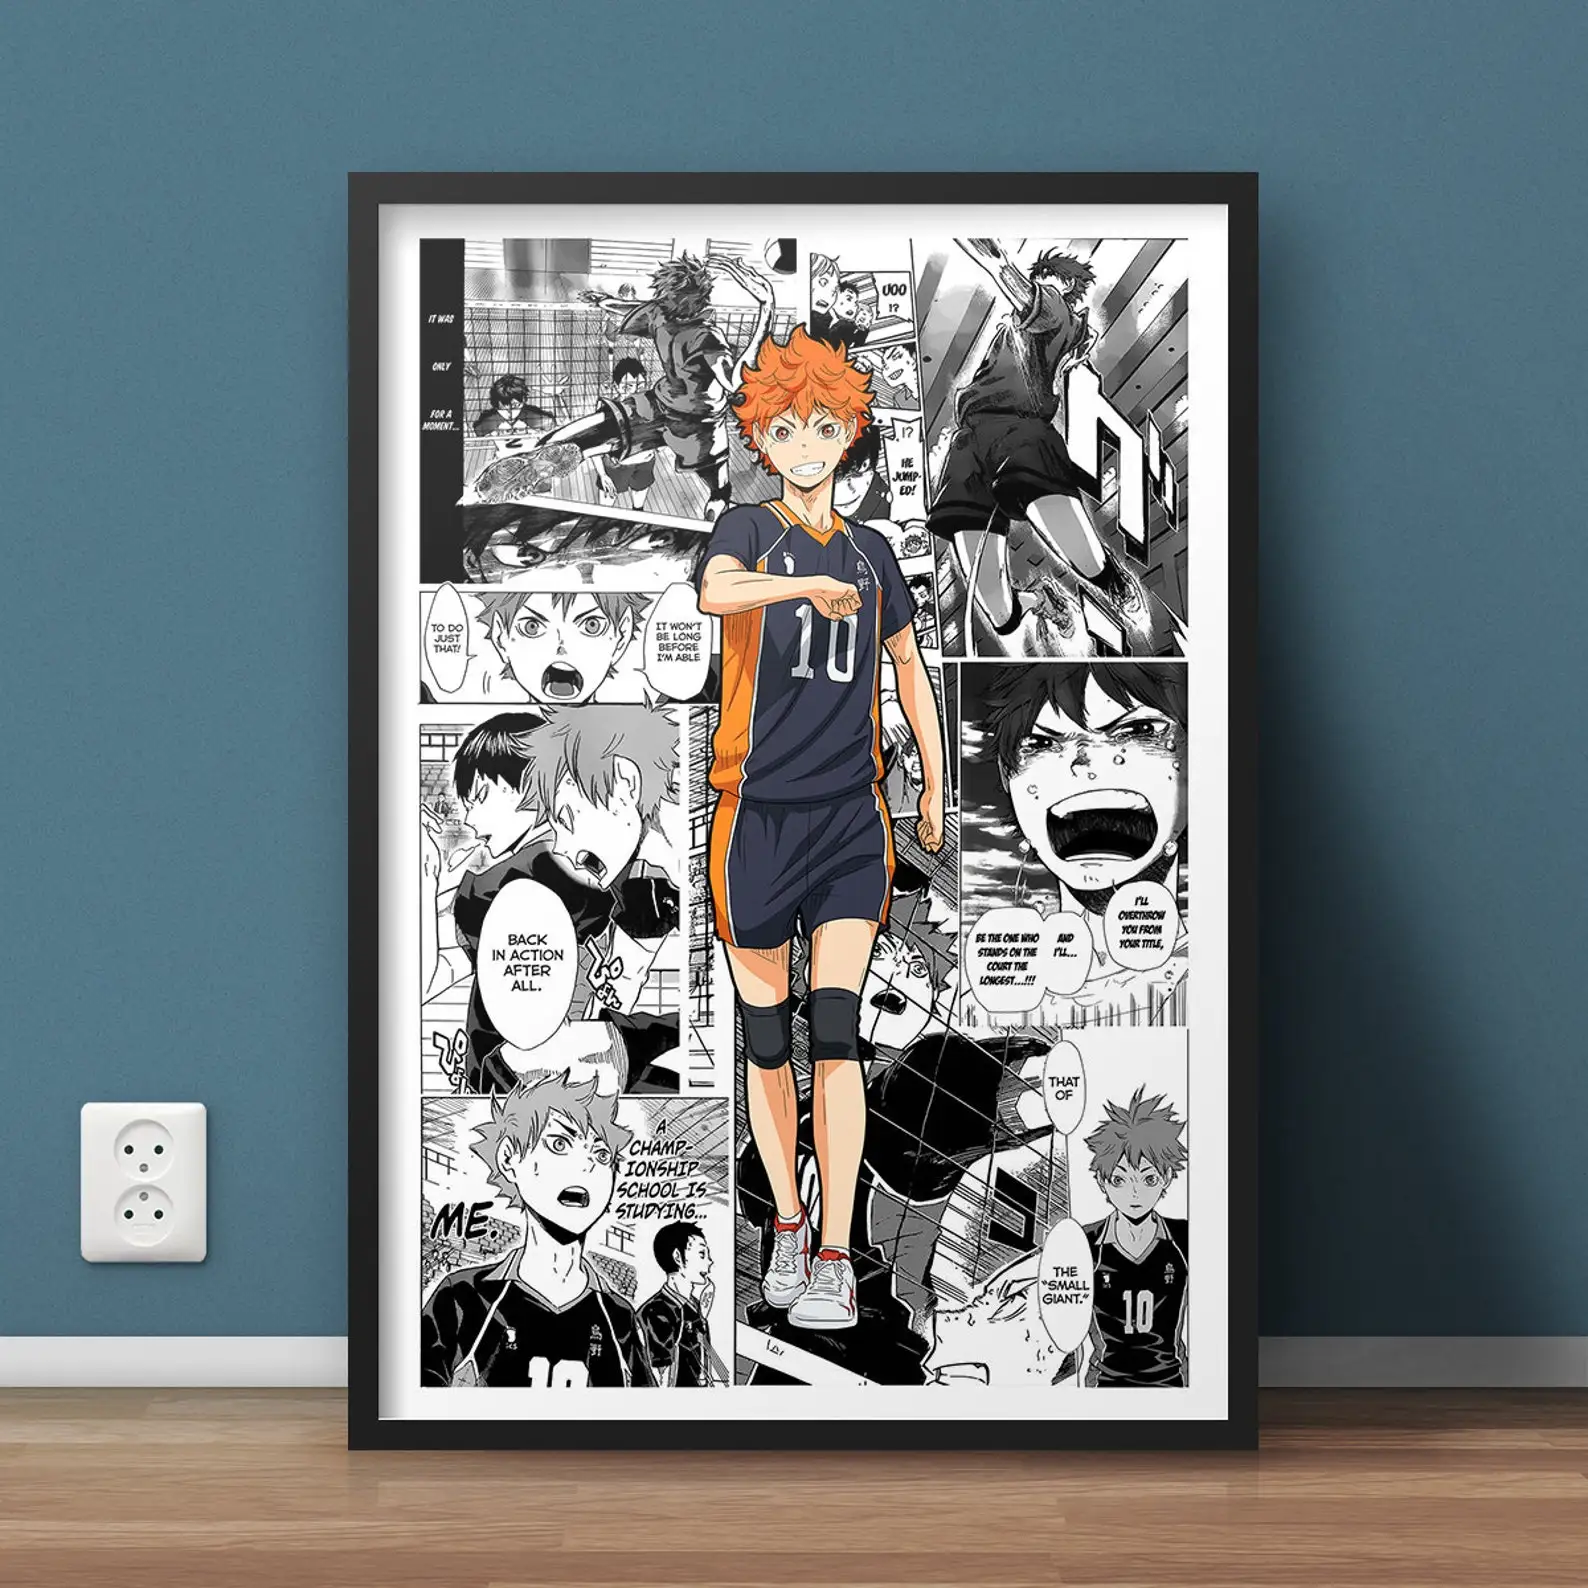 Compre Japão anime haikyuu voleibol menino dos desenhos animados cartaz da  arte da parede impressão em tela quadros para sala de estar quadros  decoração